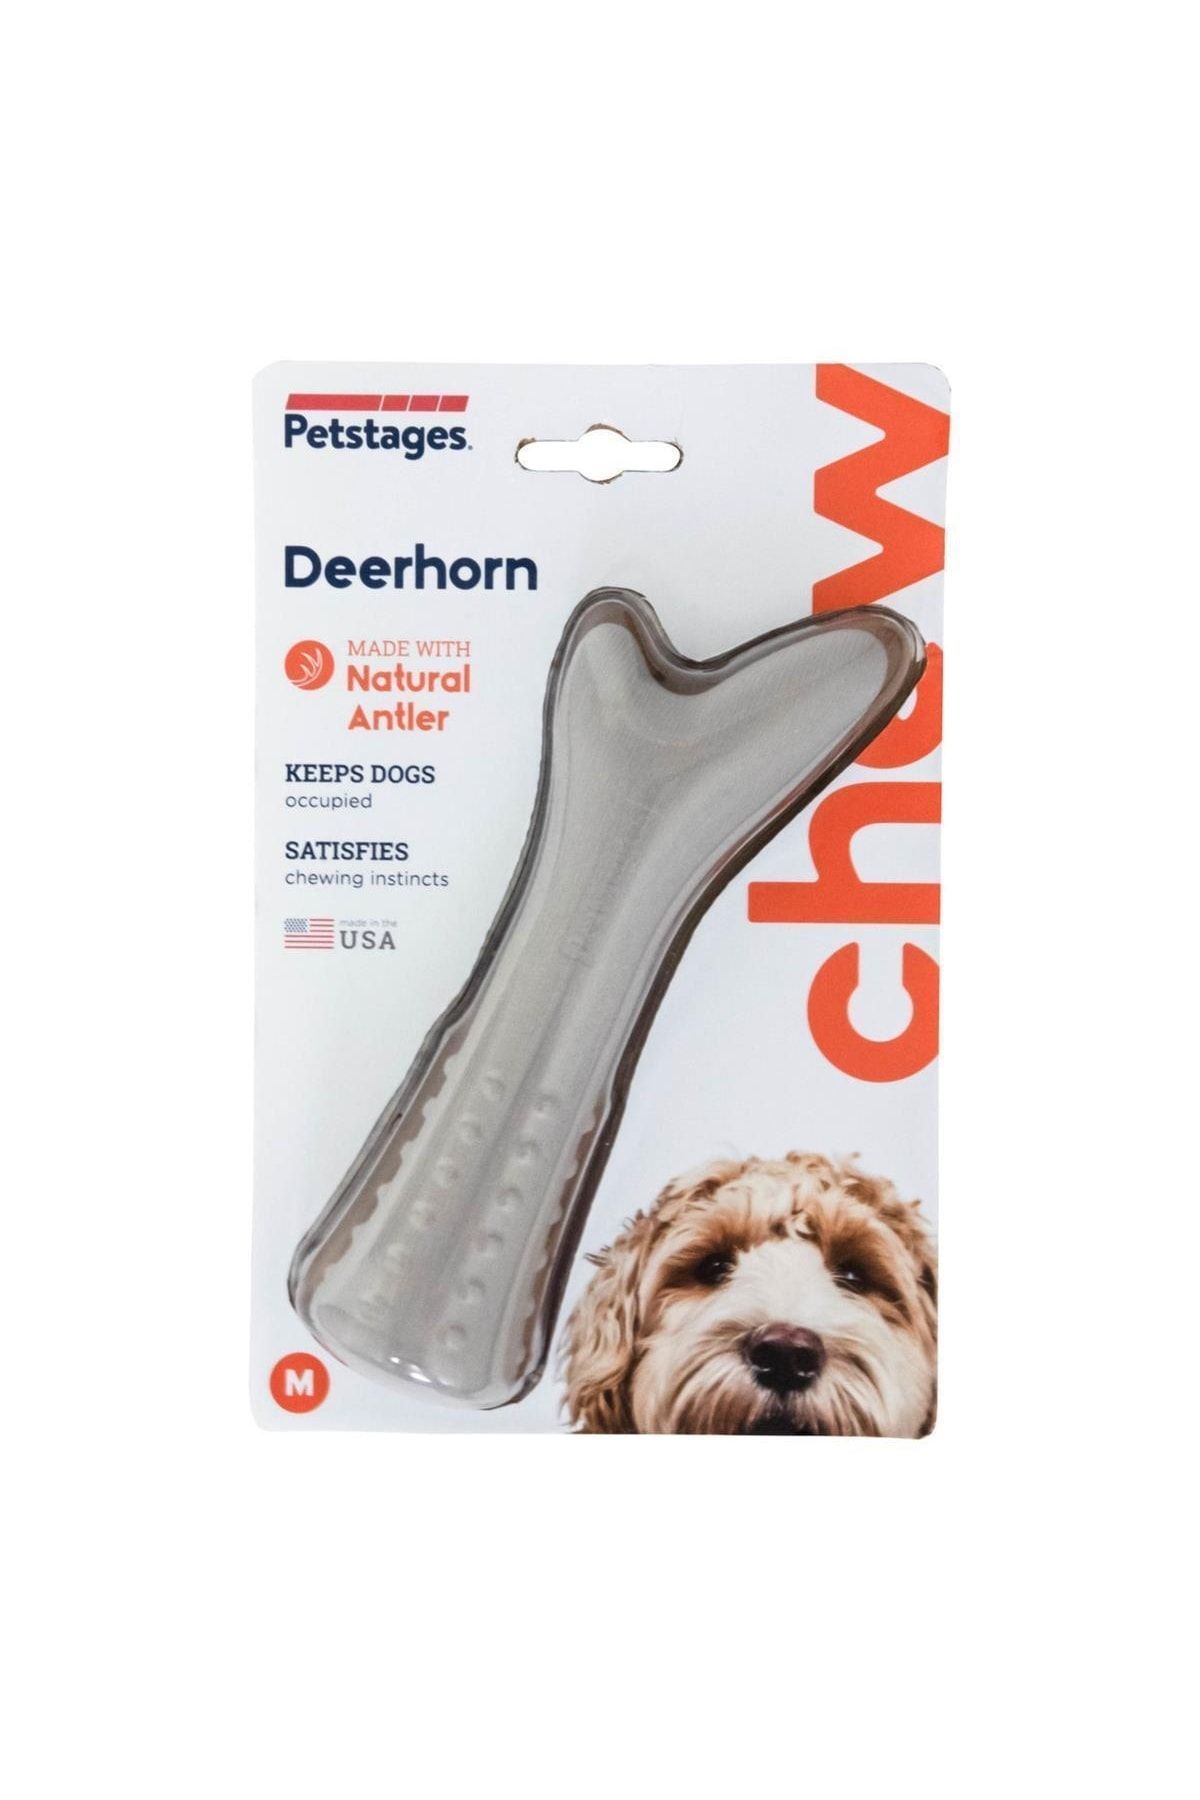 PetStages Deerhorn Antler Alternative Dog Chew Toy Köpek Çiğneme Oyuncağı - Medium - 669